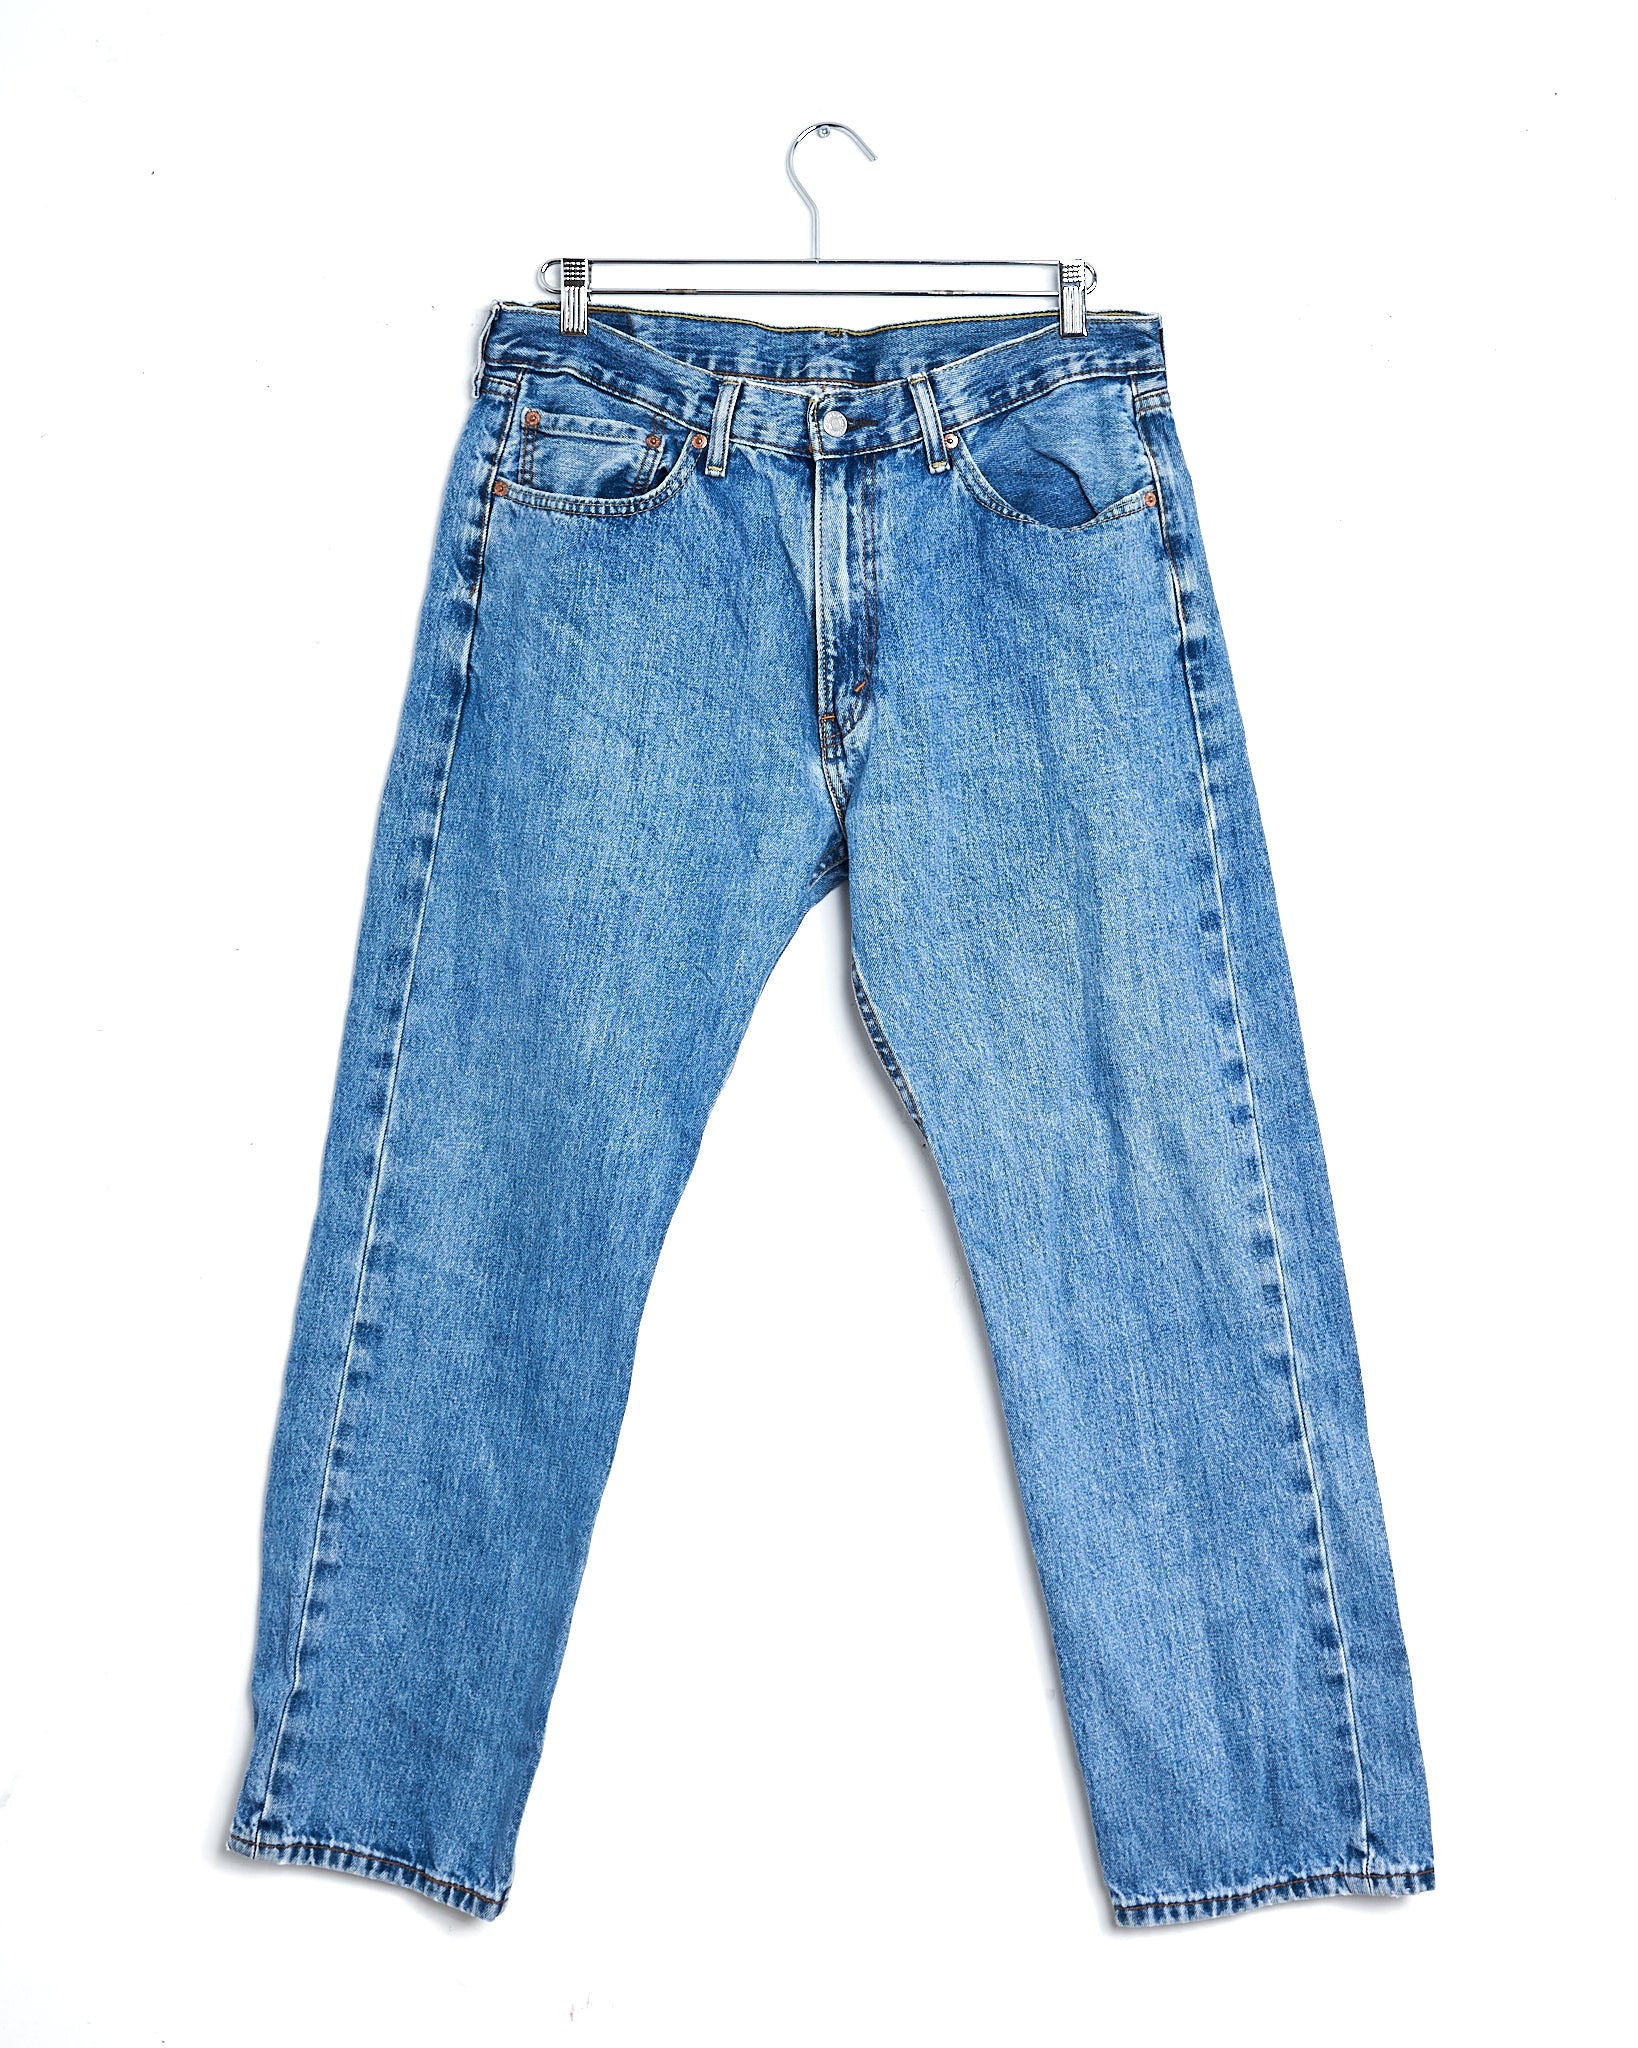 80s/'90s Levi's 505 Jeans (34x32) – GerbThrifts